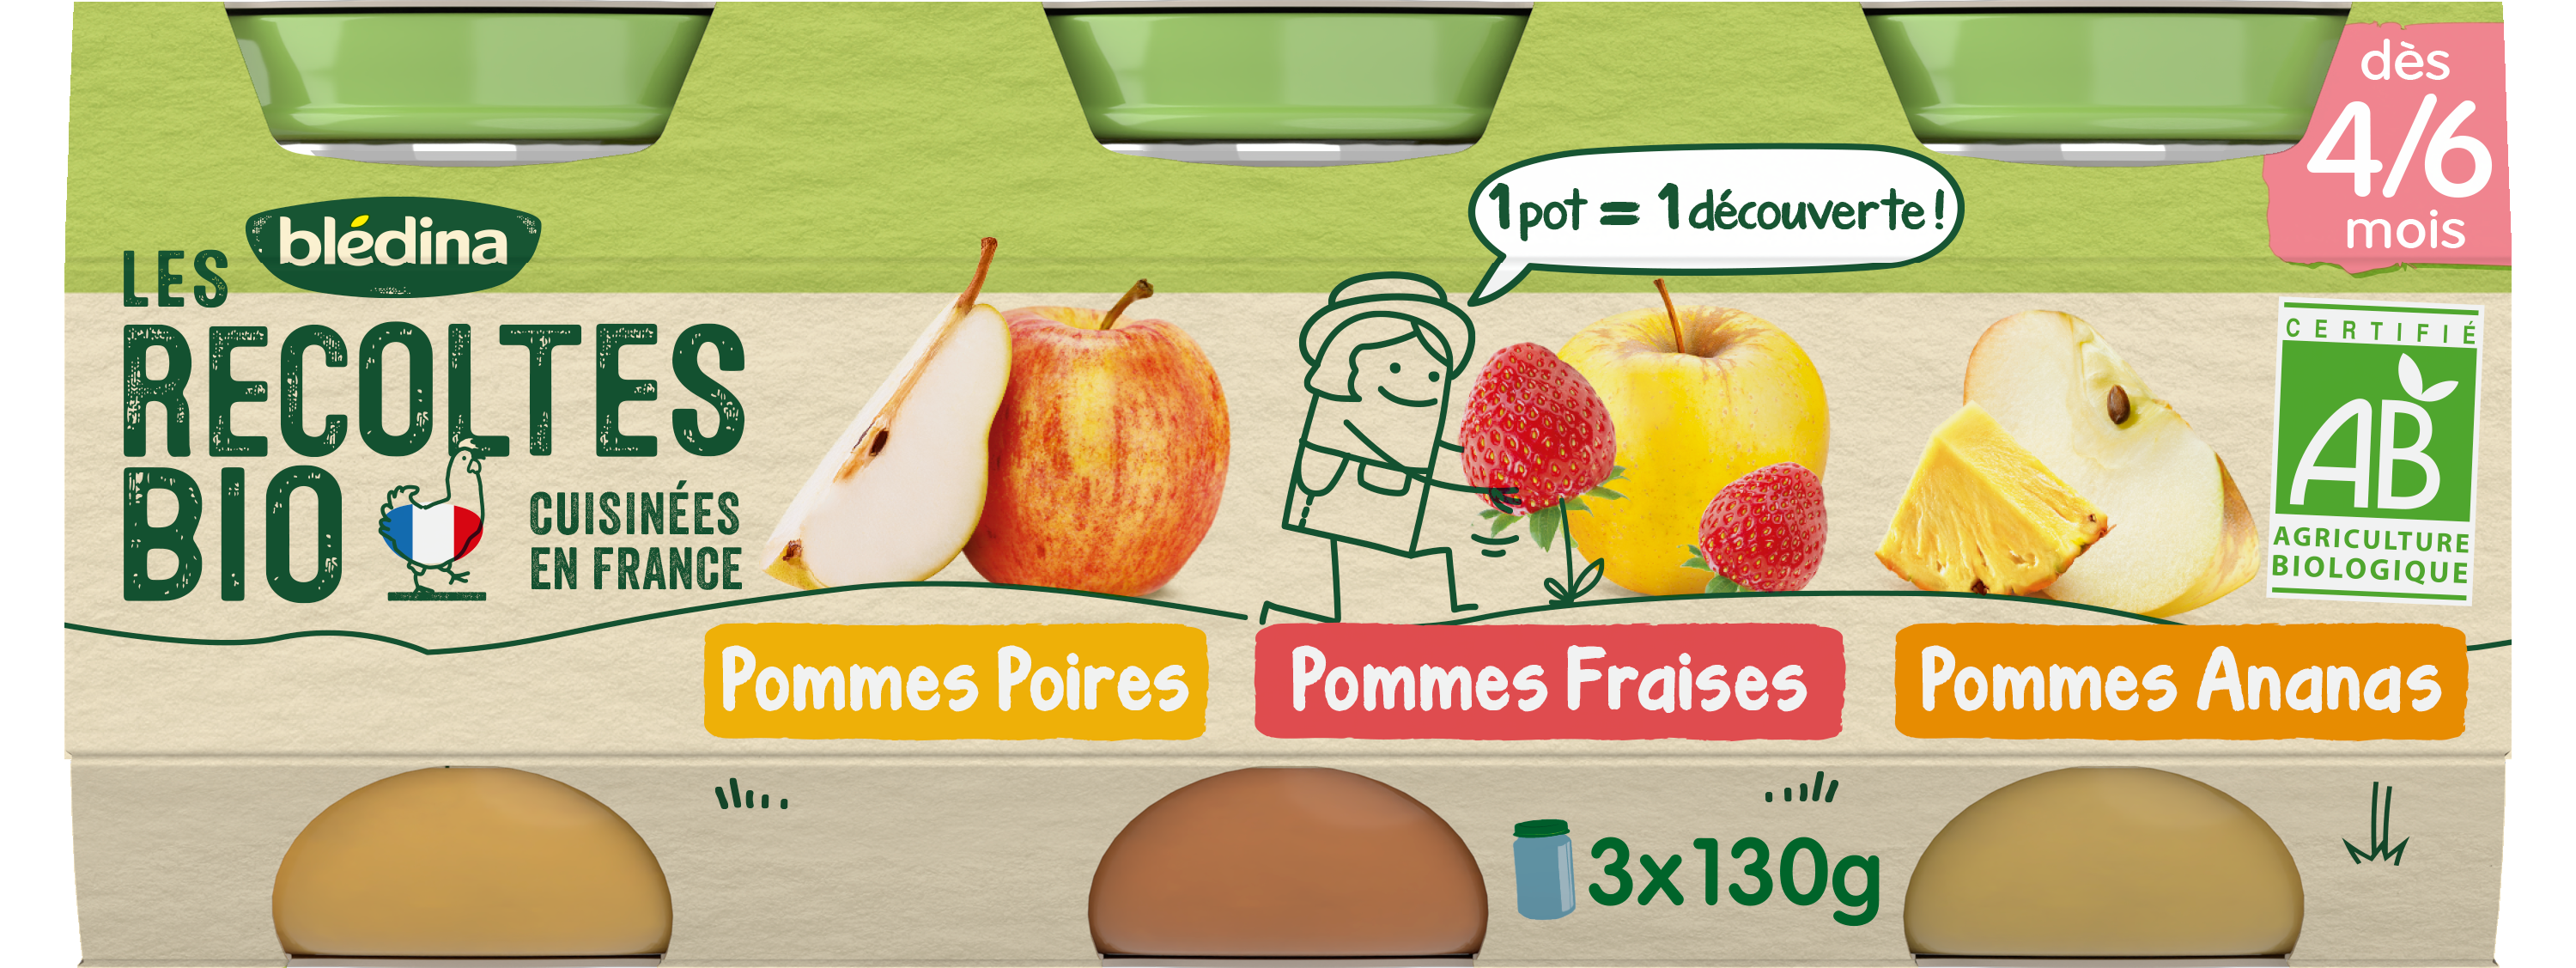 LES RECOLTES BIO - Petits Pots Pommes Poires Bio - Dès 4/6mois, 2x130g